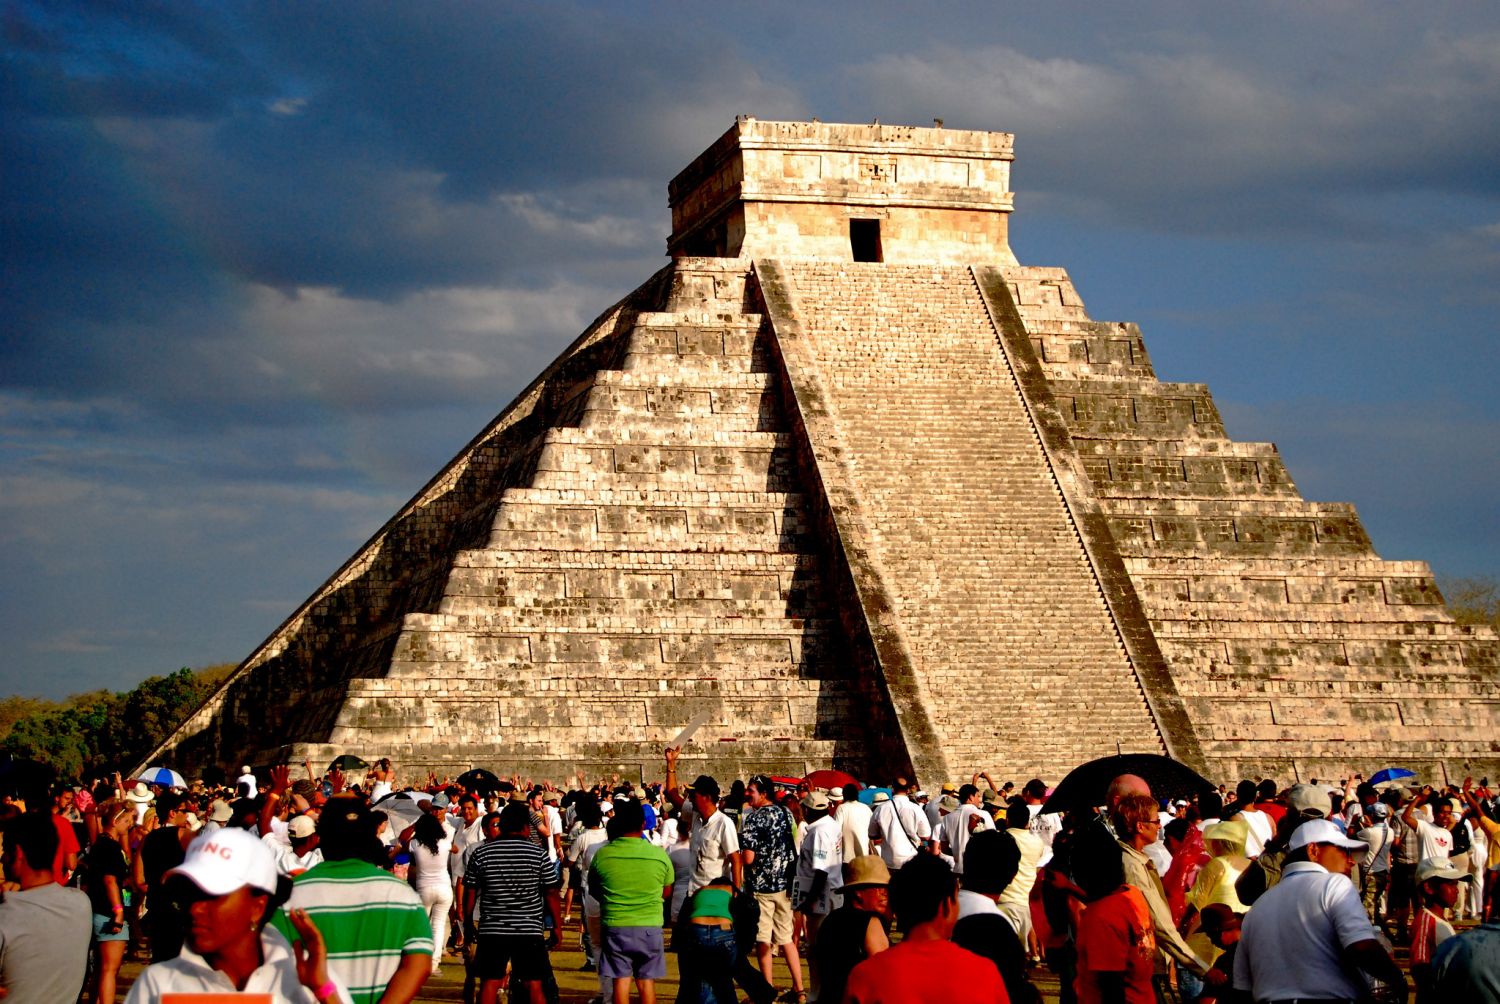 Chichén Itzá, El Castillo (The Pyramid of Kukulkán) 